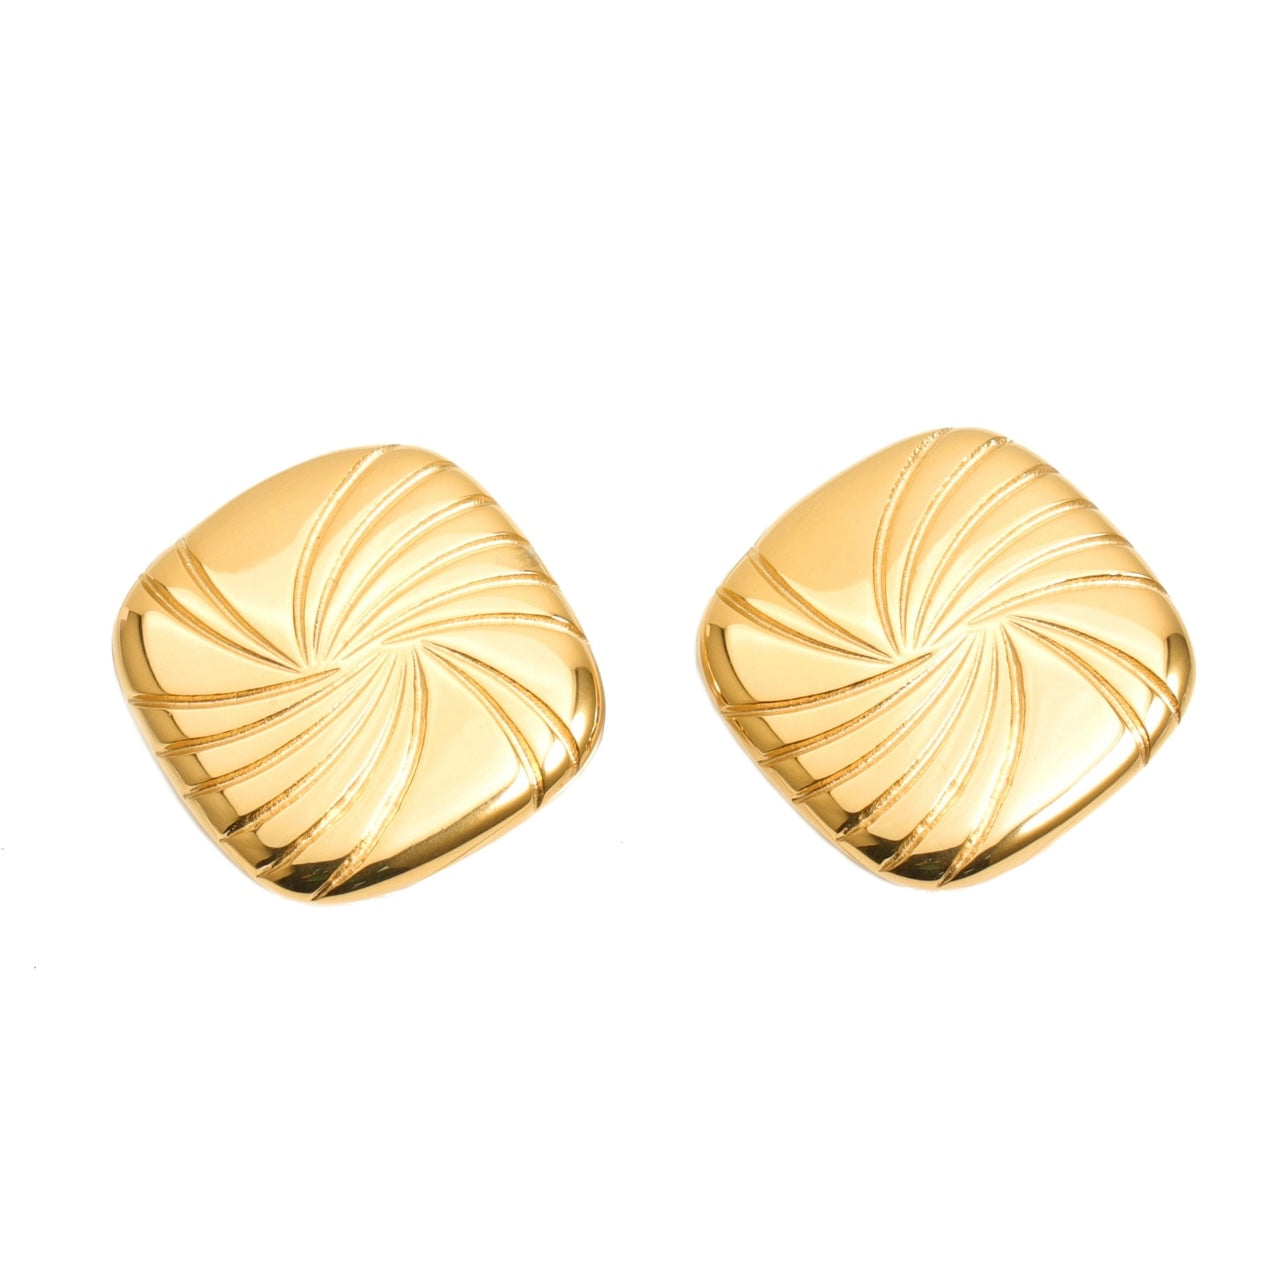 Twirl Chucky Earrings - gold